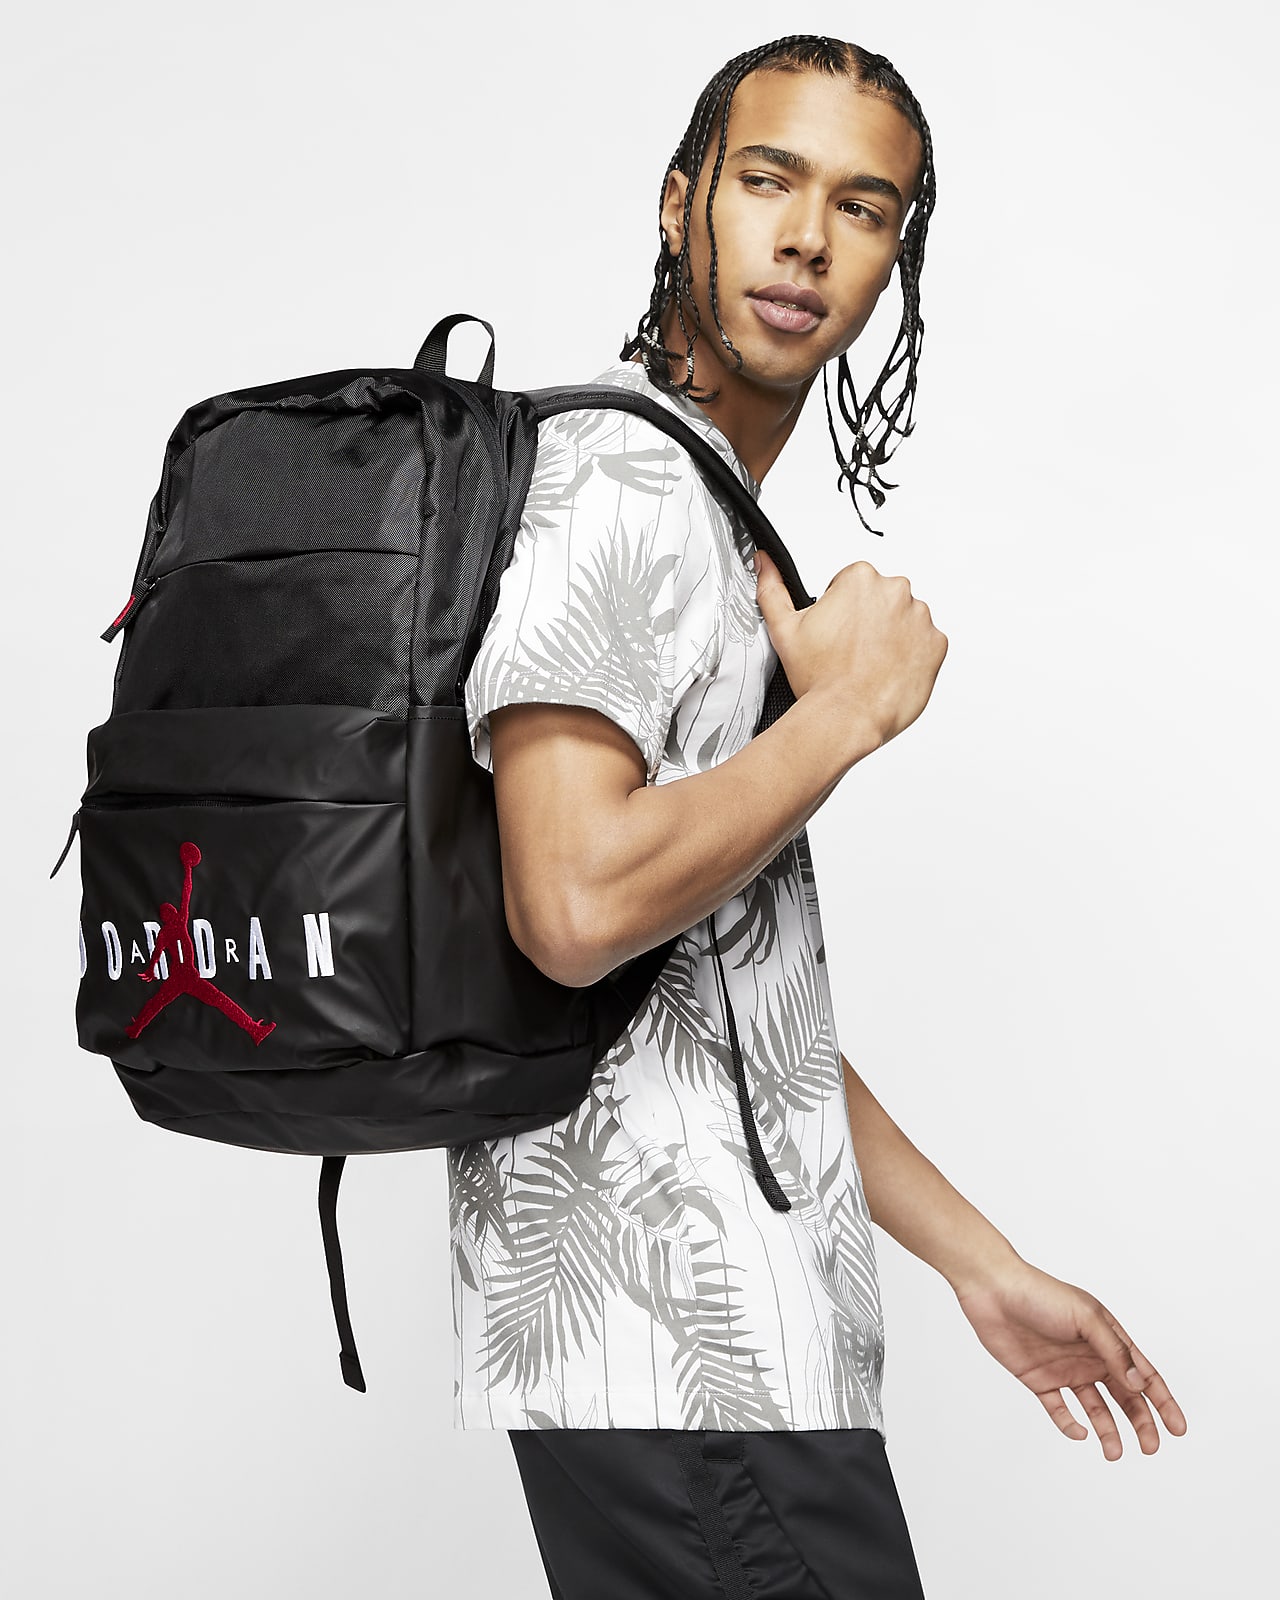 where can i buy a jordan backpack